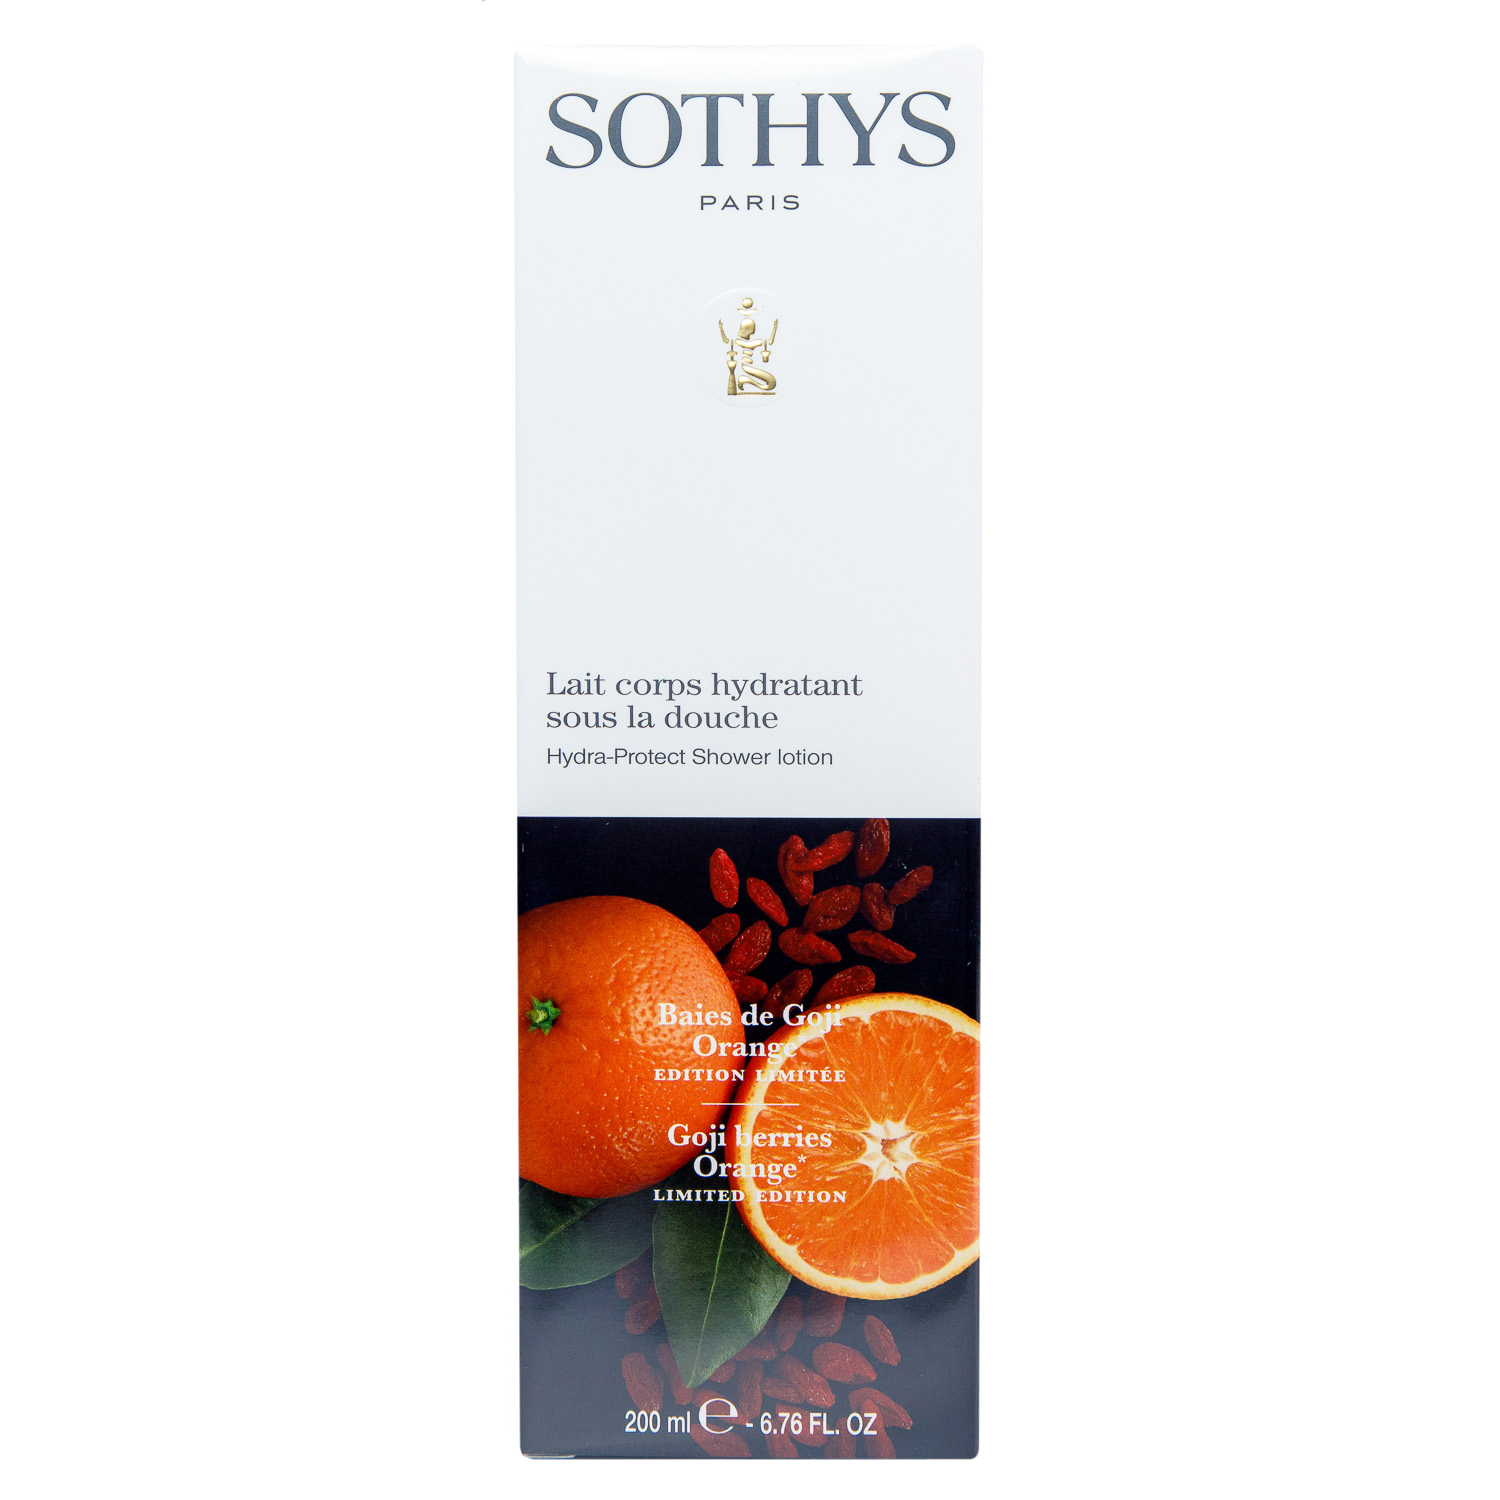 Sothys Увлажняющий лосьон-уход для использования в душе Ягоды годжи - апельсин, 200 мл (Sothys, Seasonal Treatment) бальзам для губ sothys ягоды годжи и апельсин 10 мл